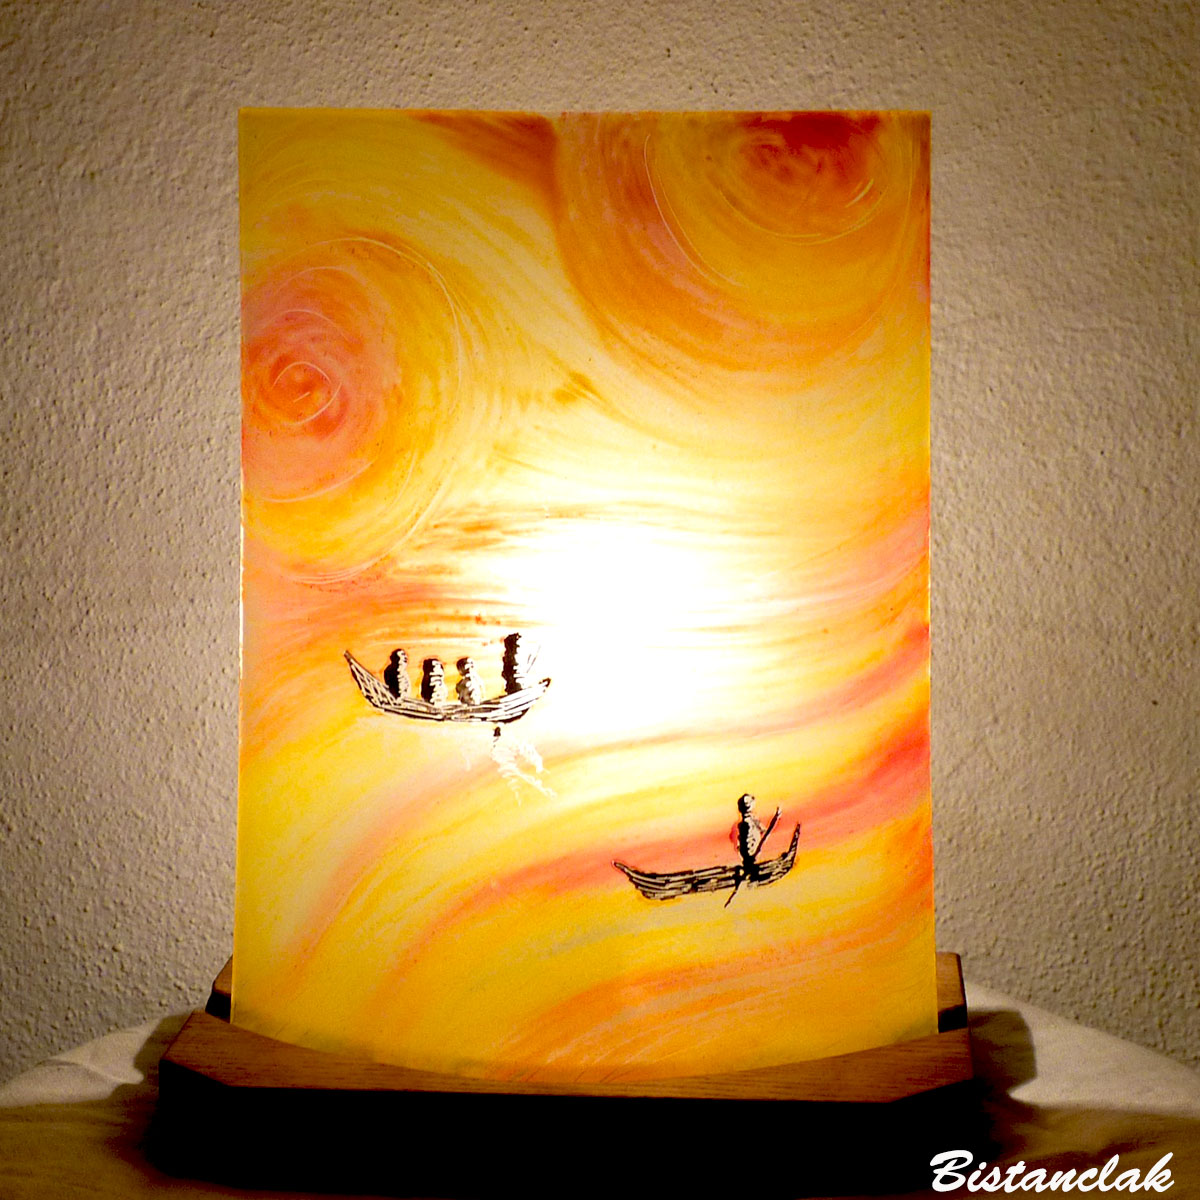 Lampe d'ambiance en verre jaune, orange, rouge motif barques entre ciel et mer